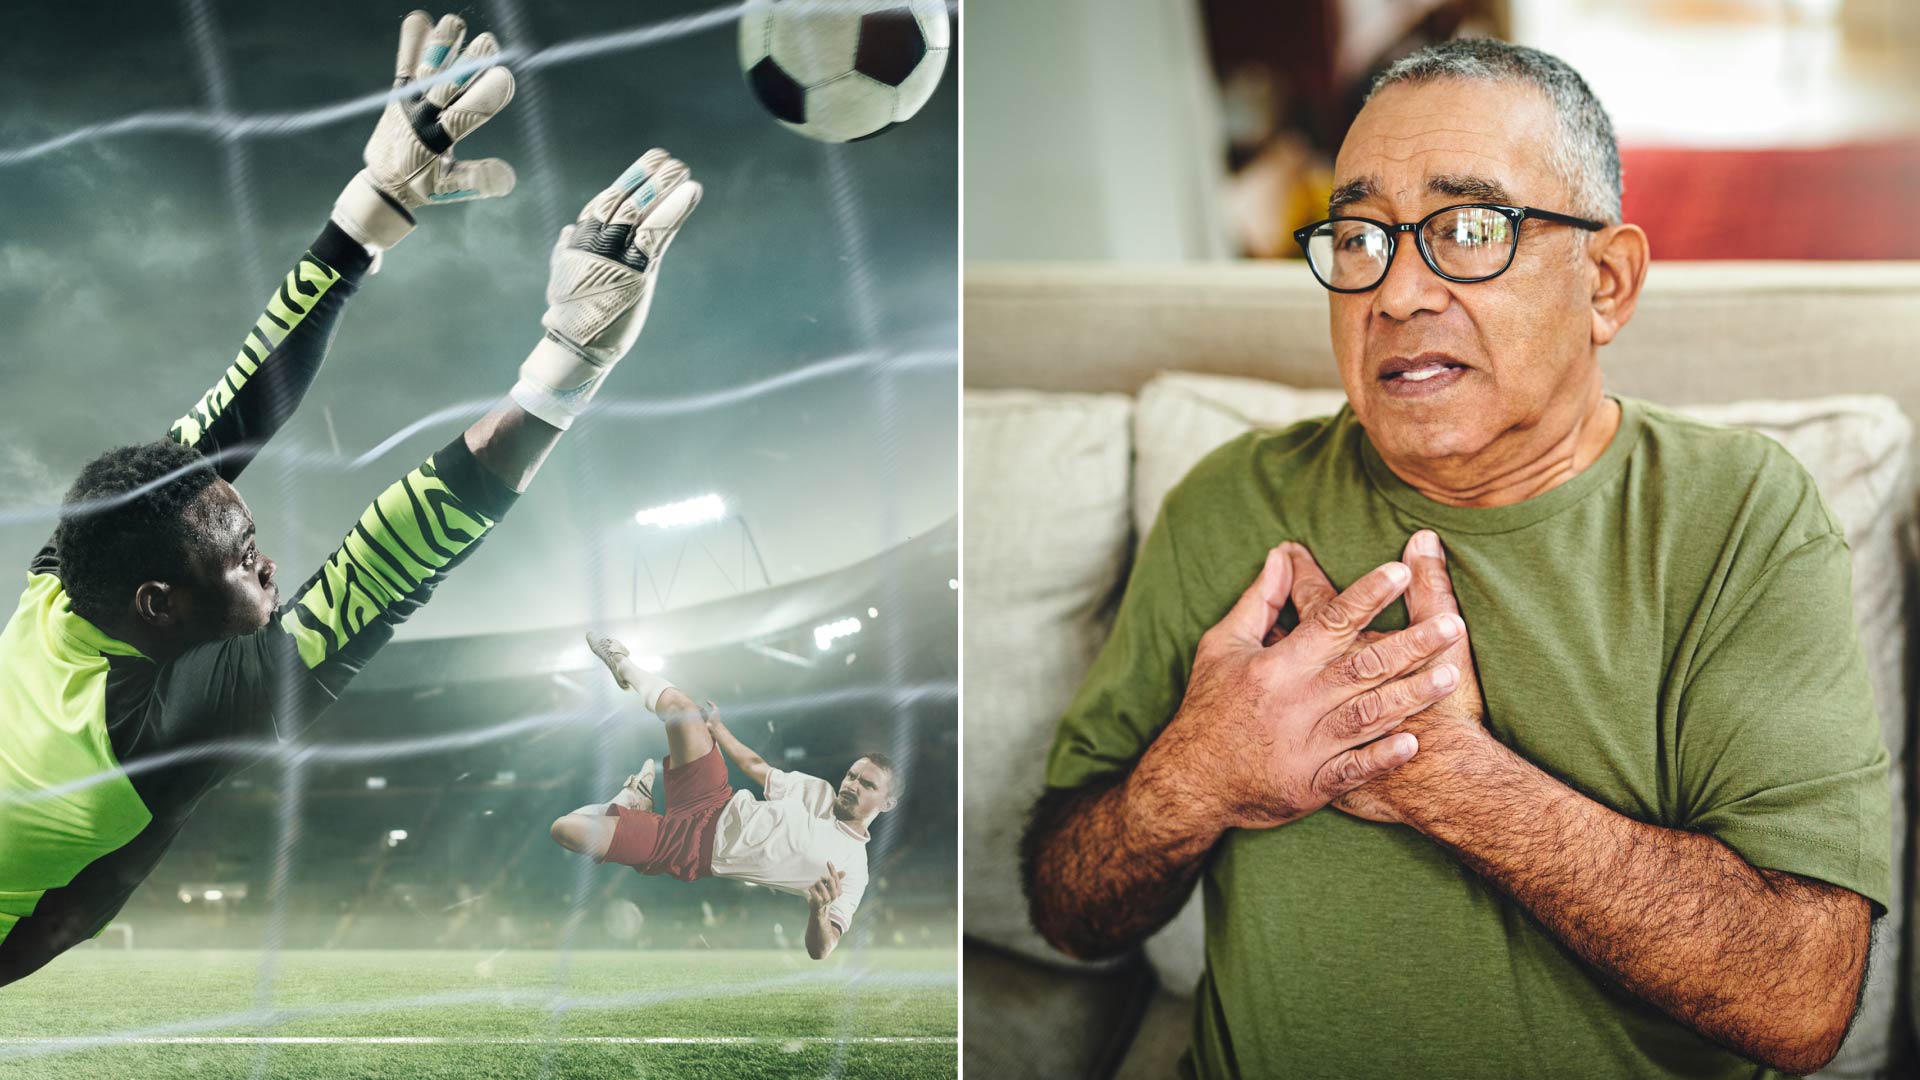 Existe un riesgo de sufrir eventos cardiovasculares durante un partido de futbol, según varios estudios científicos (Getty)